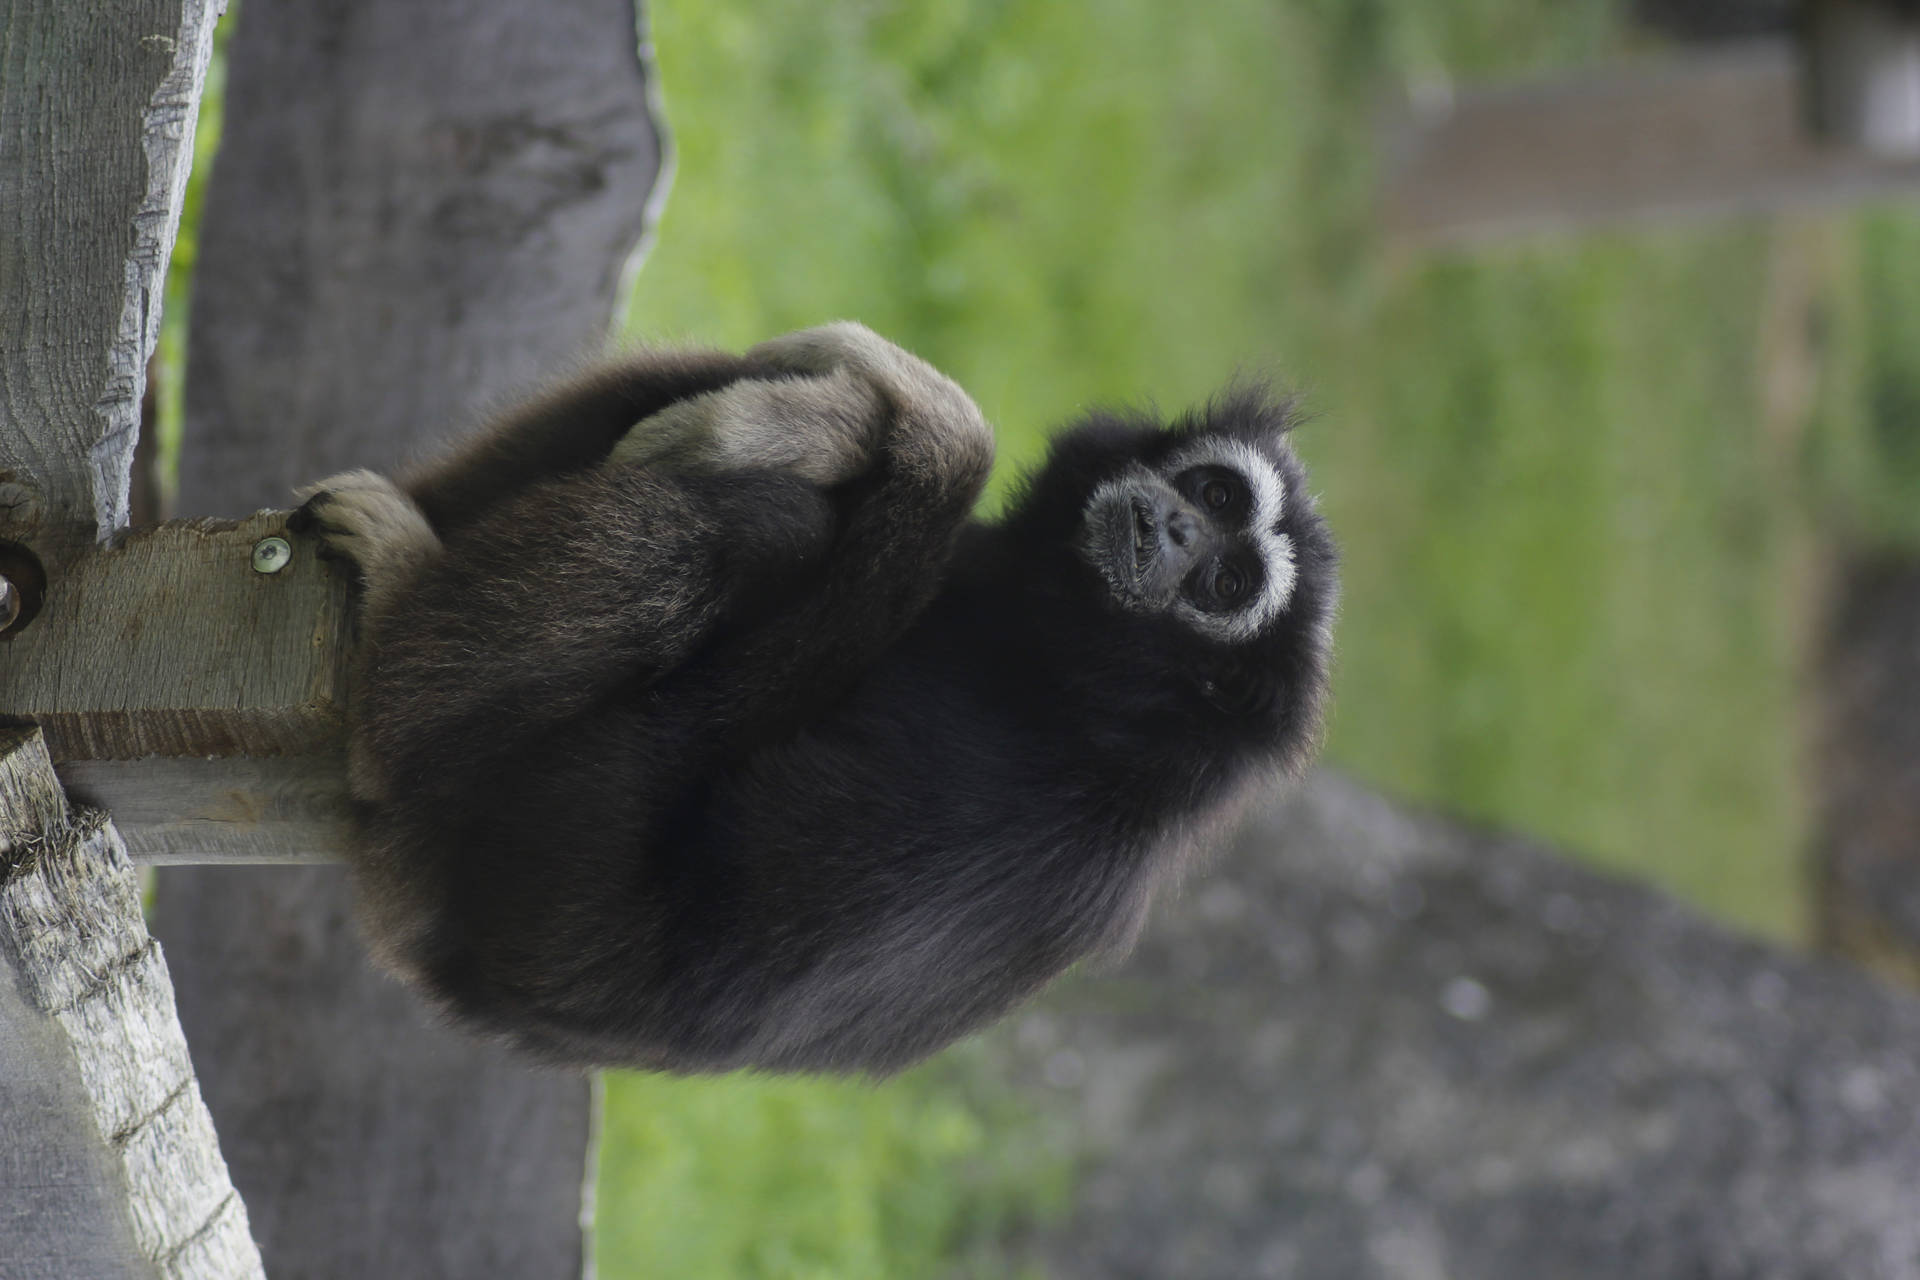 Gibbon Outside Enclosure Background